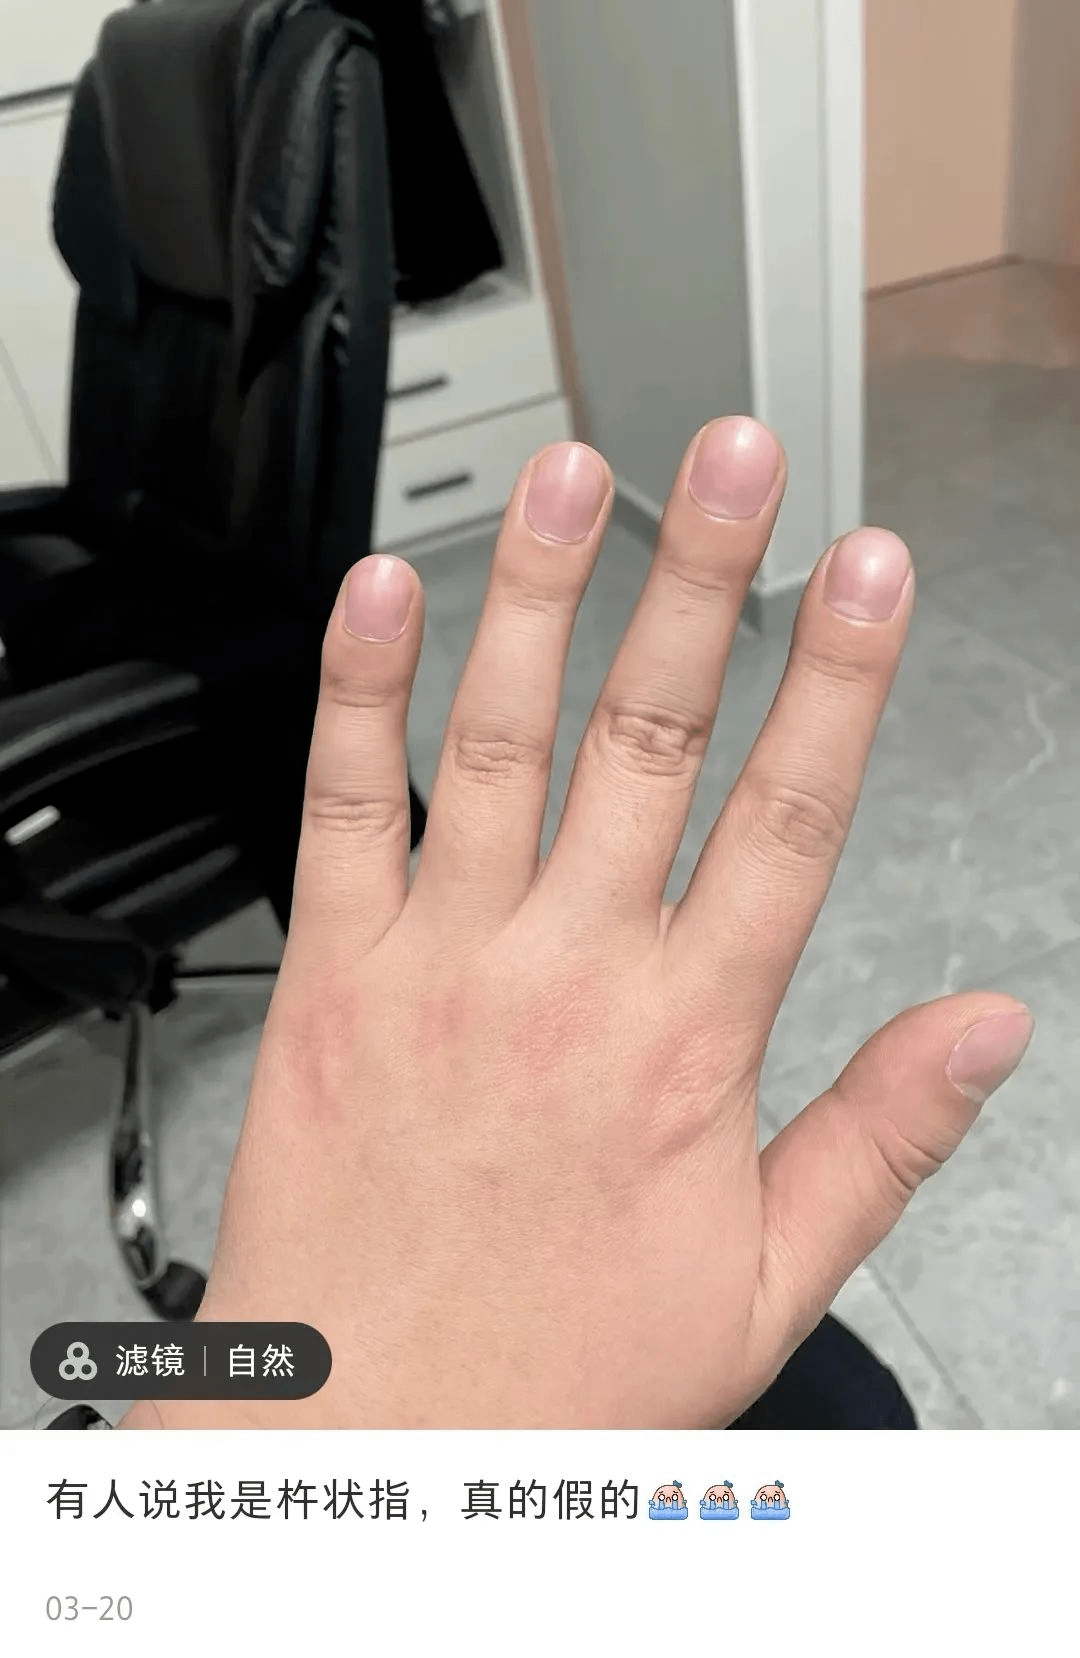 杵状指,民间又称鼓槌指杵状指的表现一般是手指或者脚趾的末梢关节软